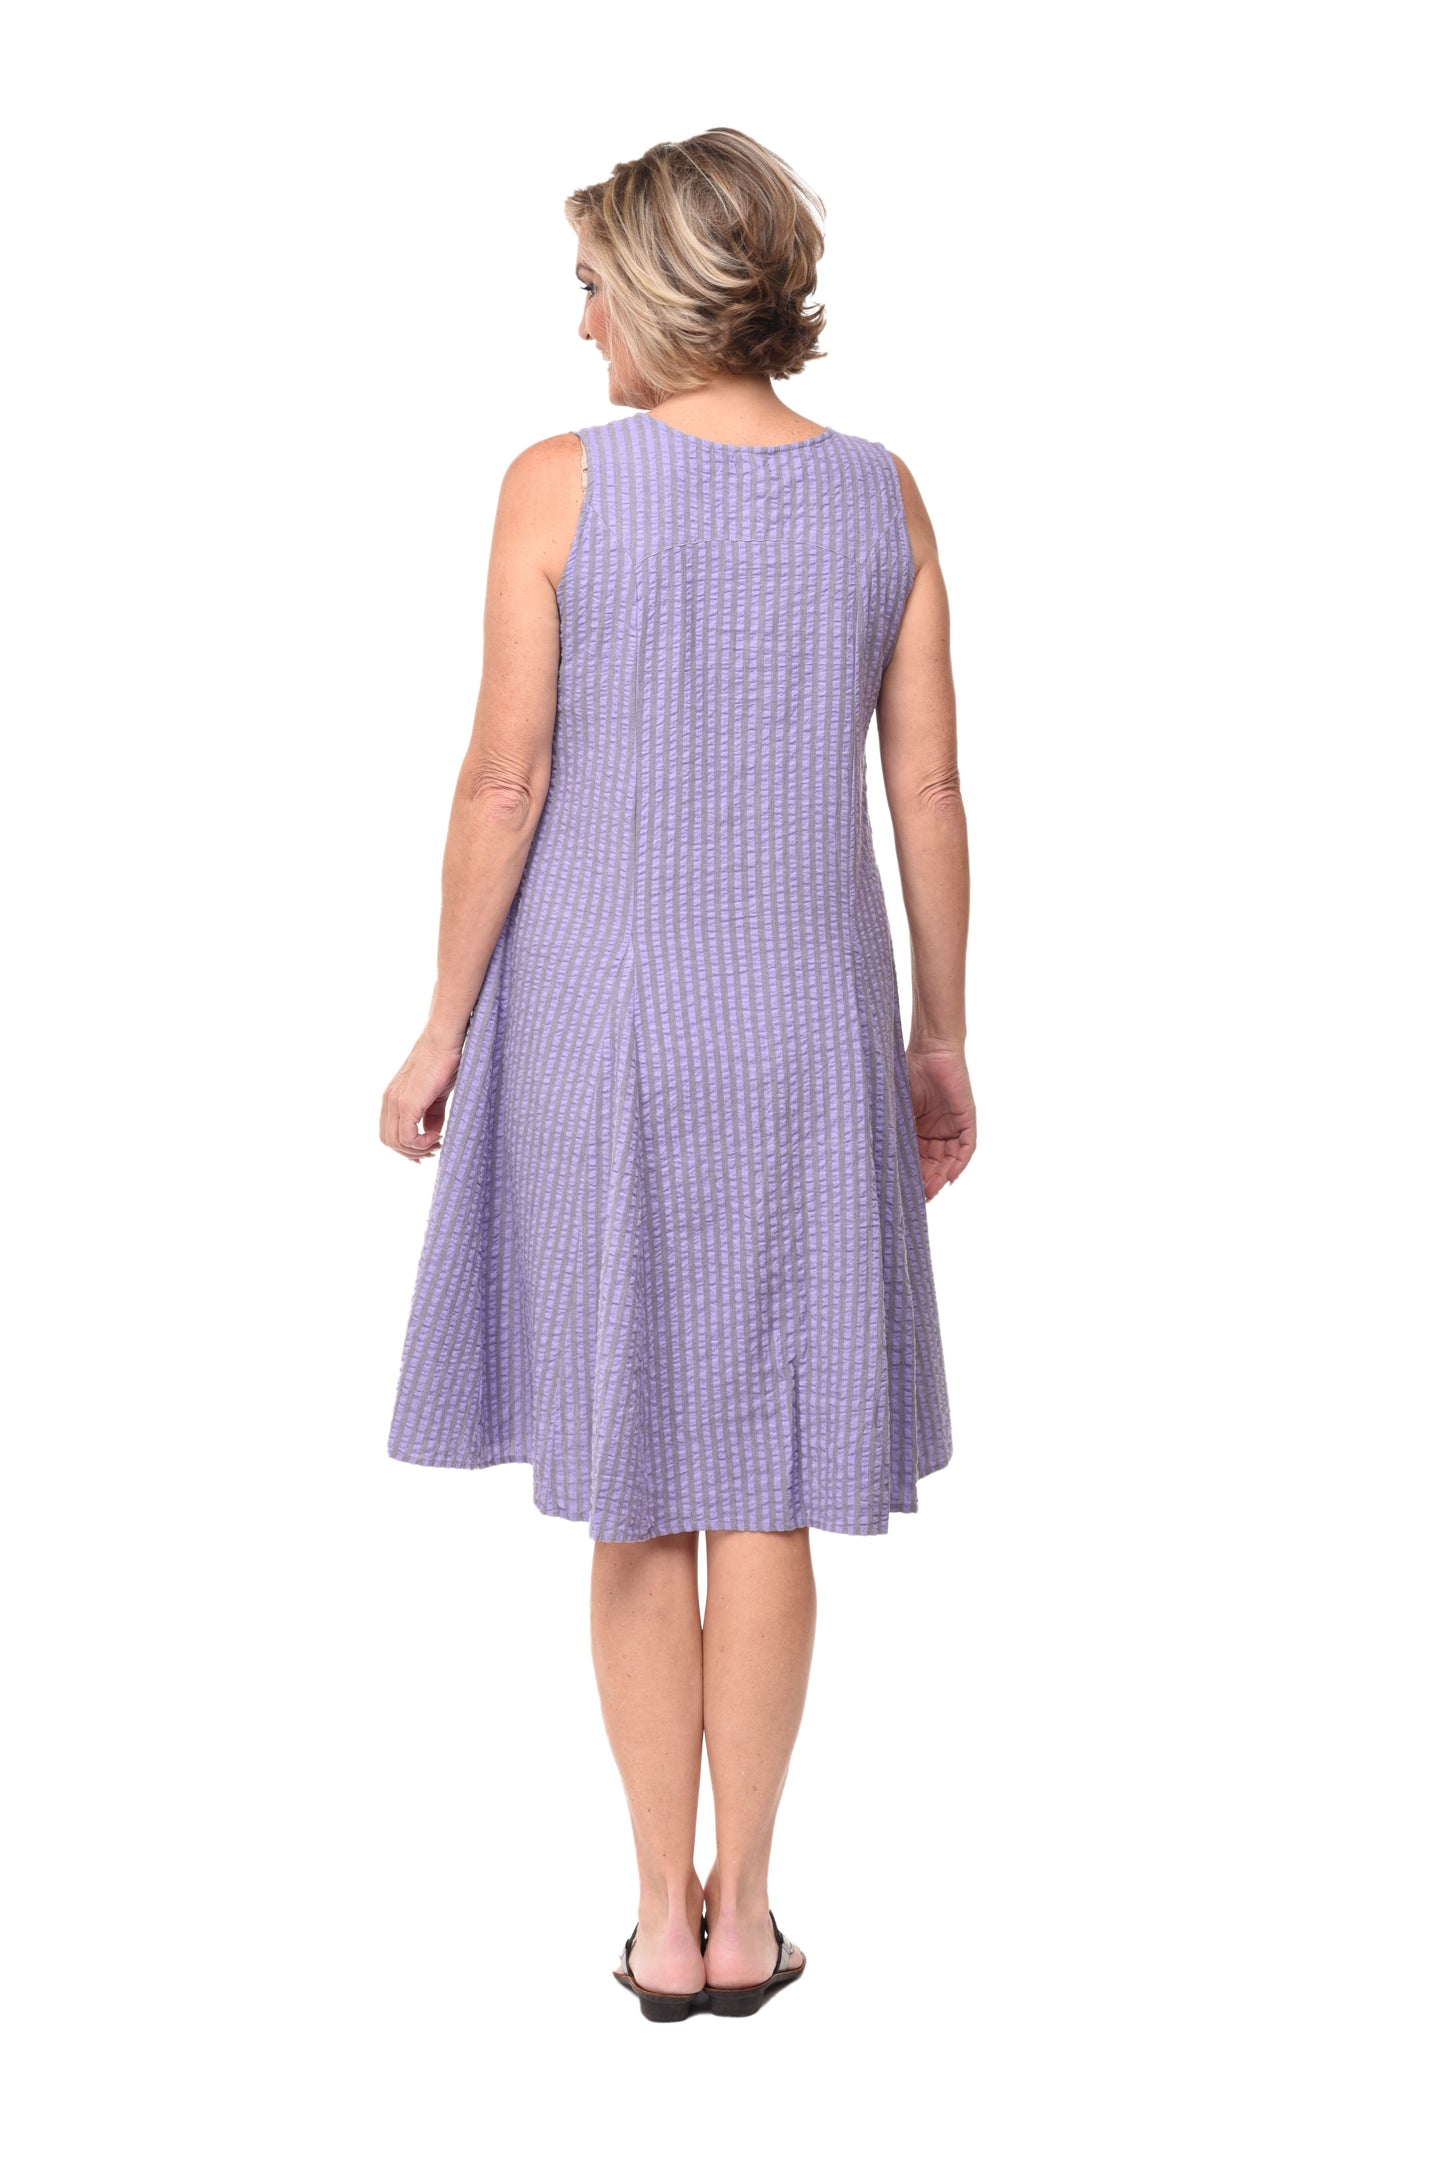 CV656 Poppie Dress in Sully Seersucker Stripe